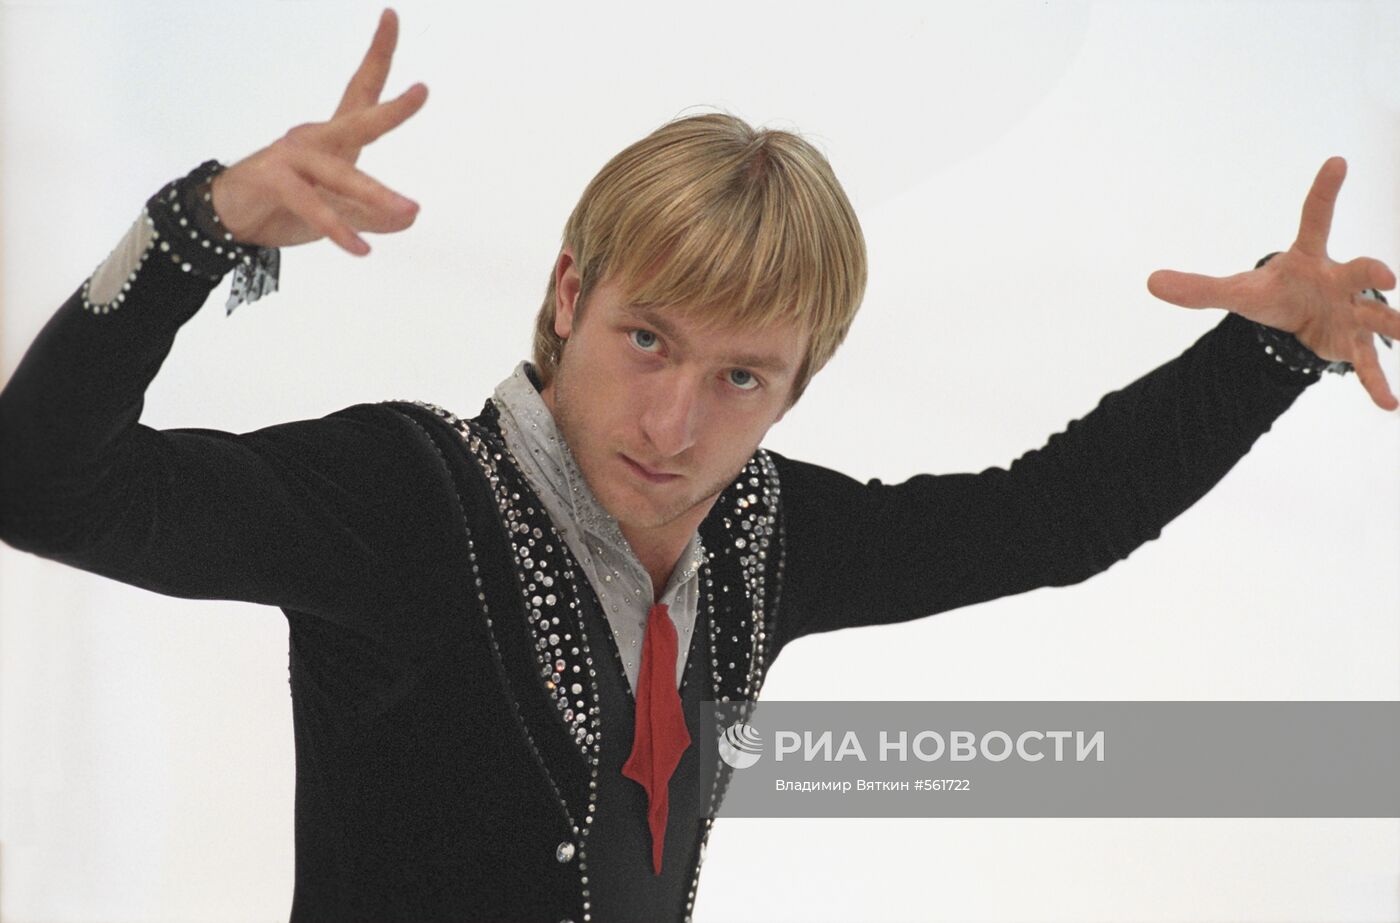 Российский фигурист, чемпион мира и Европы Евгений Плющенко